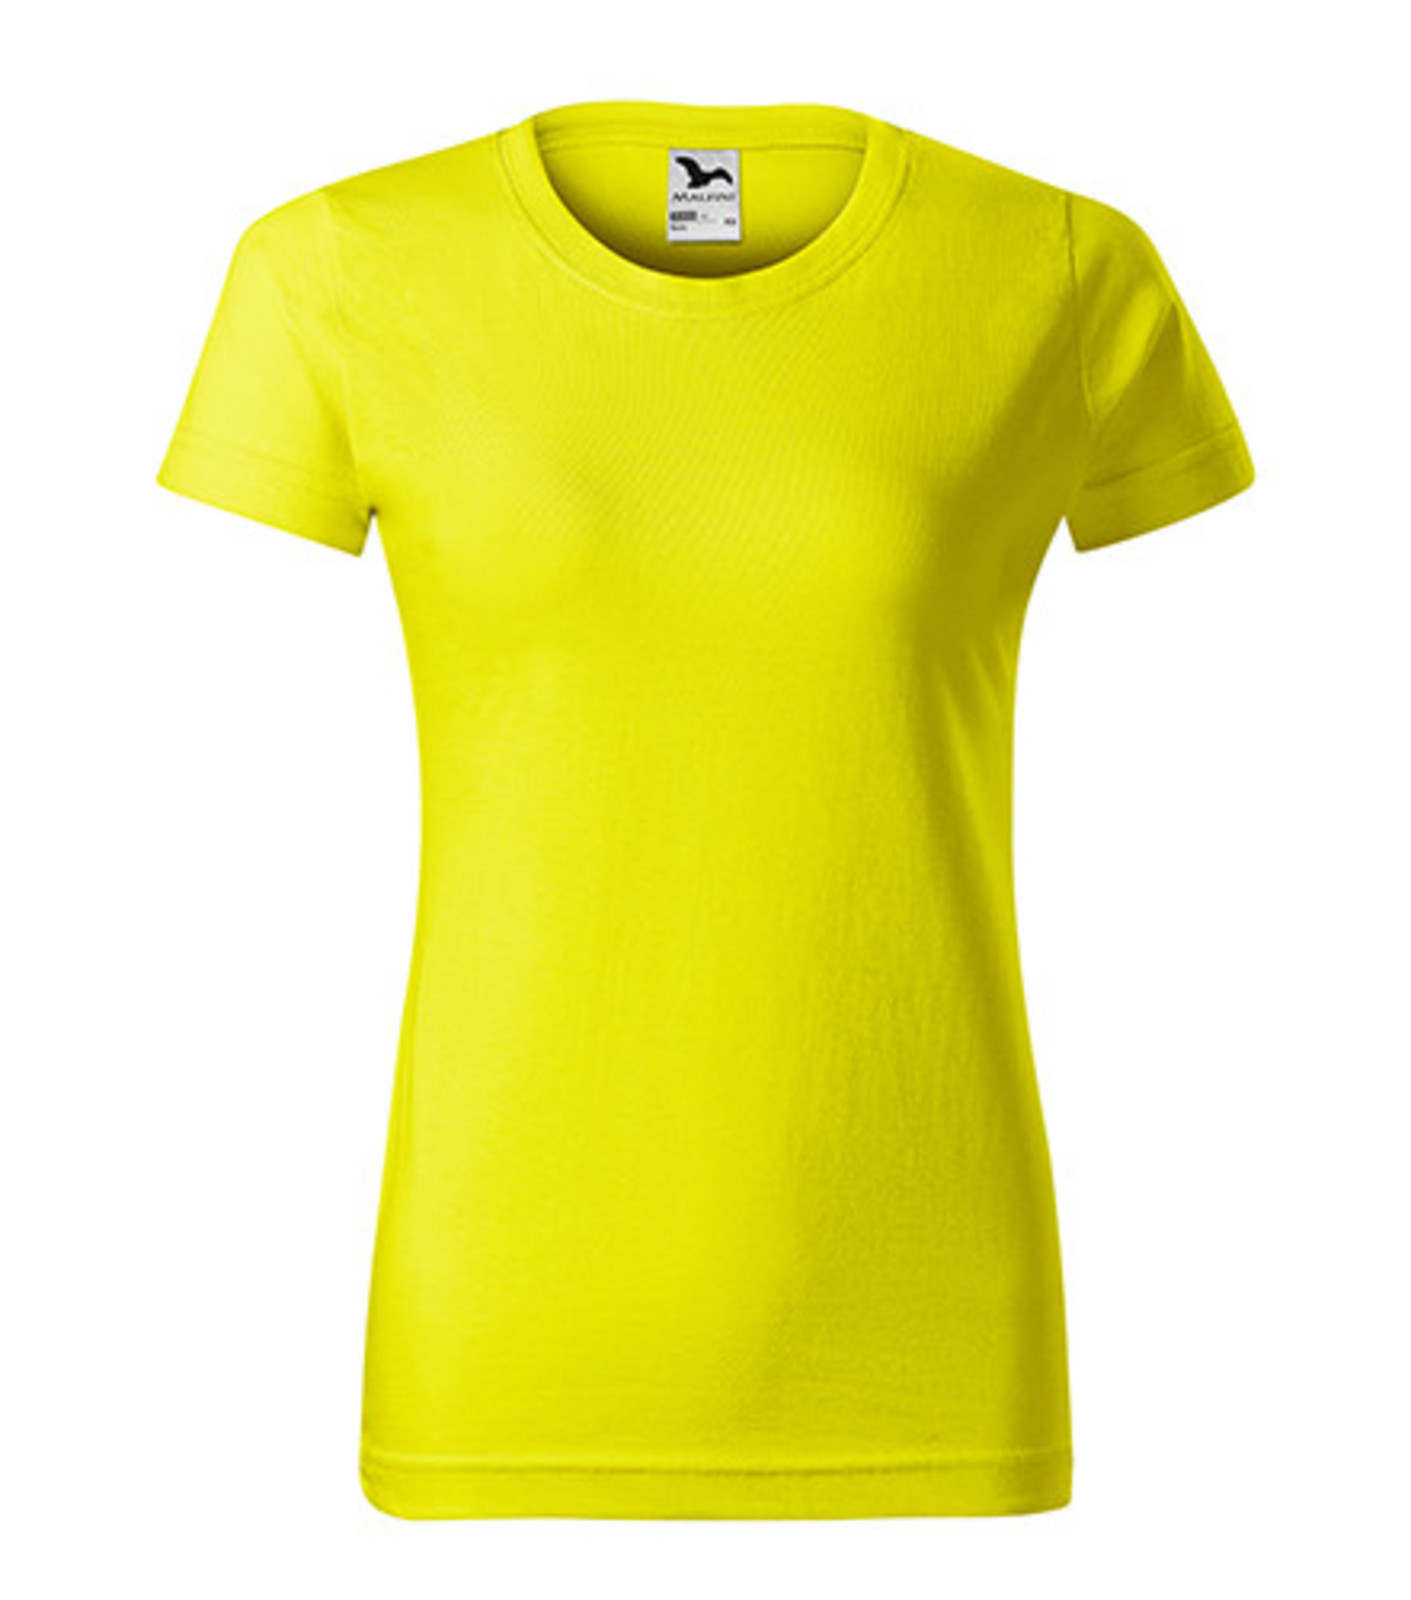 Dámske tričko Malfini Basic 134 - veľkosť: XL, farba: citrónová